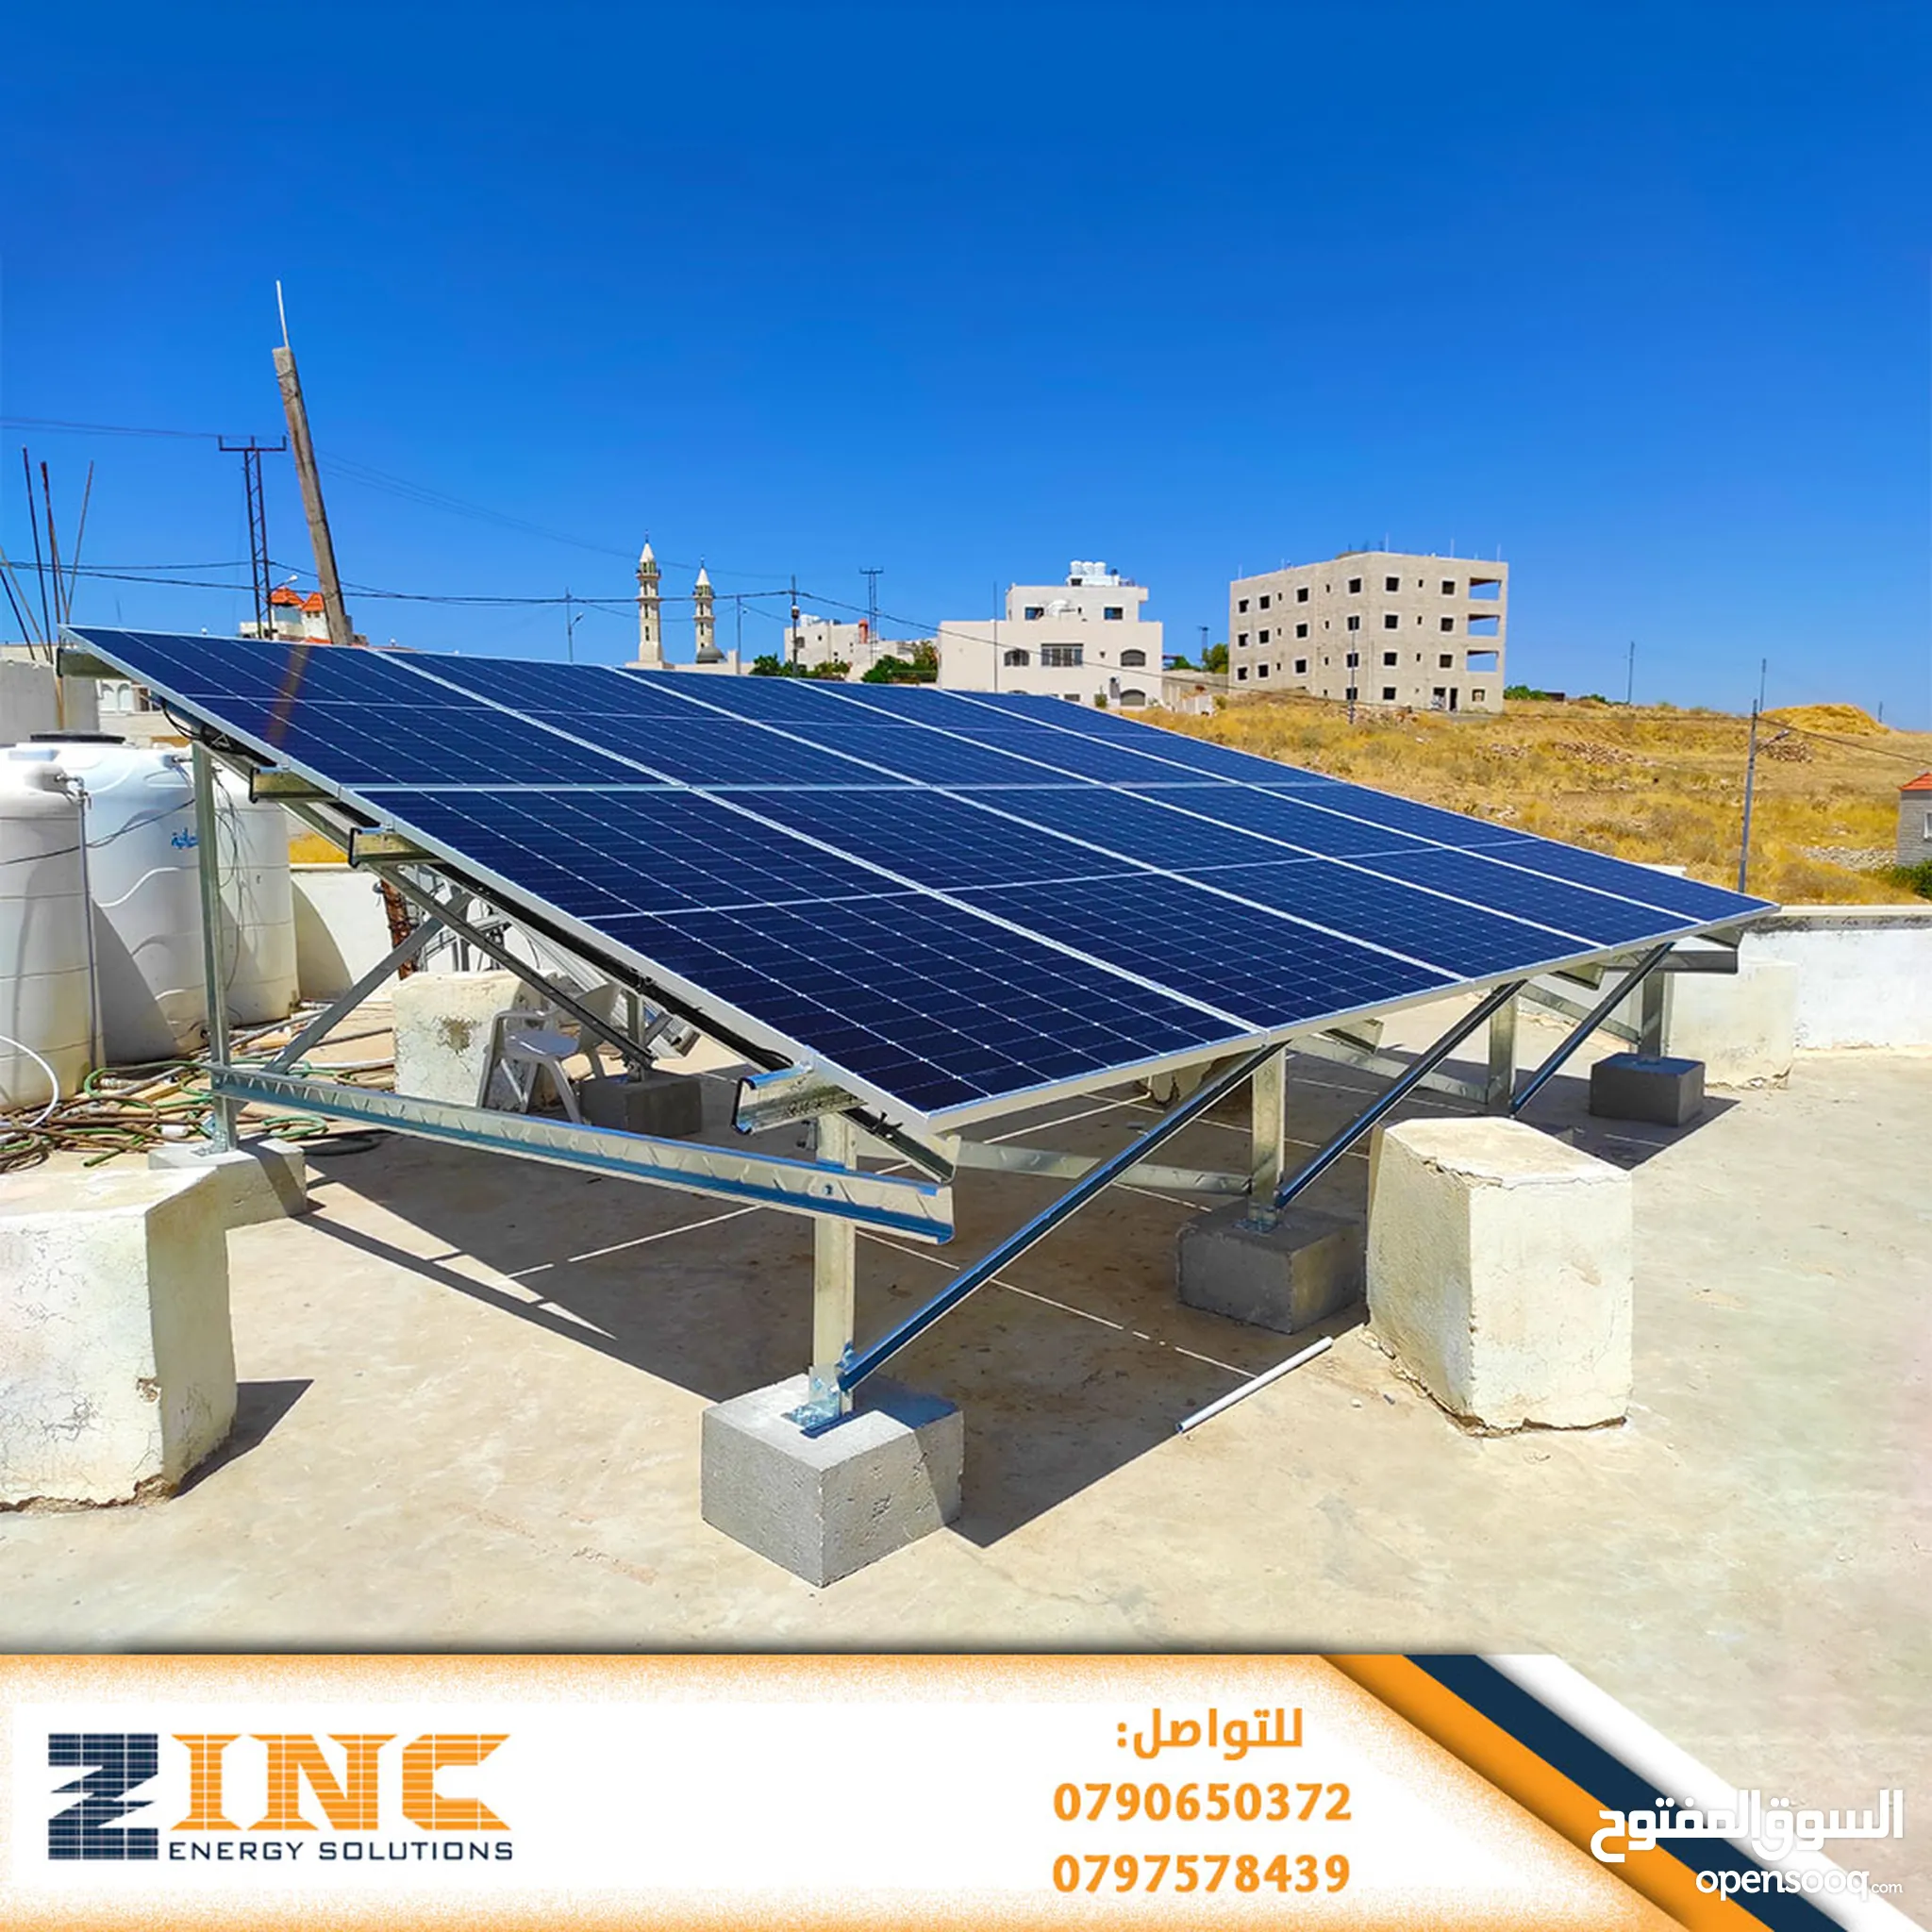 سخانات - كيزر - بويلر خلايا شمسية للبيع في الأردن | السوق المفتوح